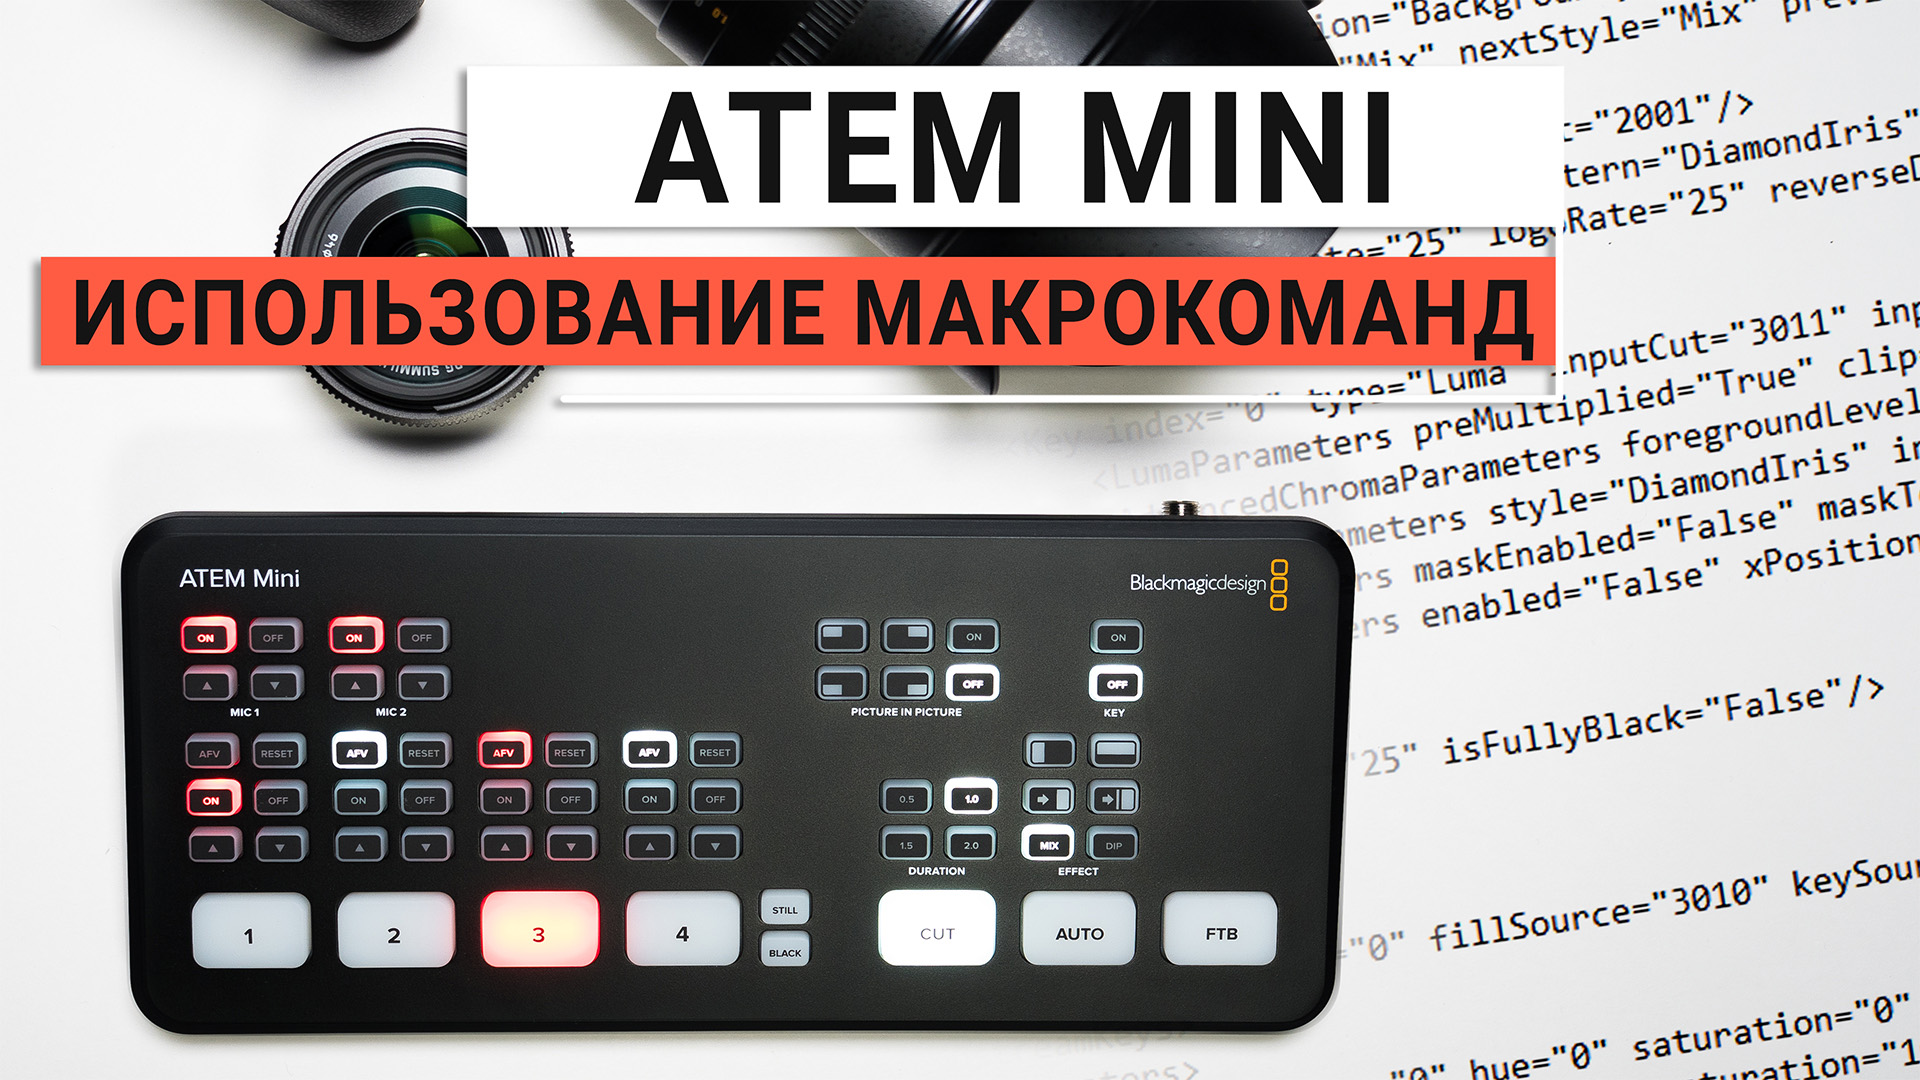 ATEM Mini. Использование макрокоманд в приложении ATEM Software Control